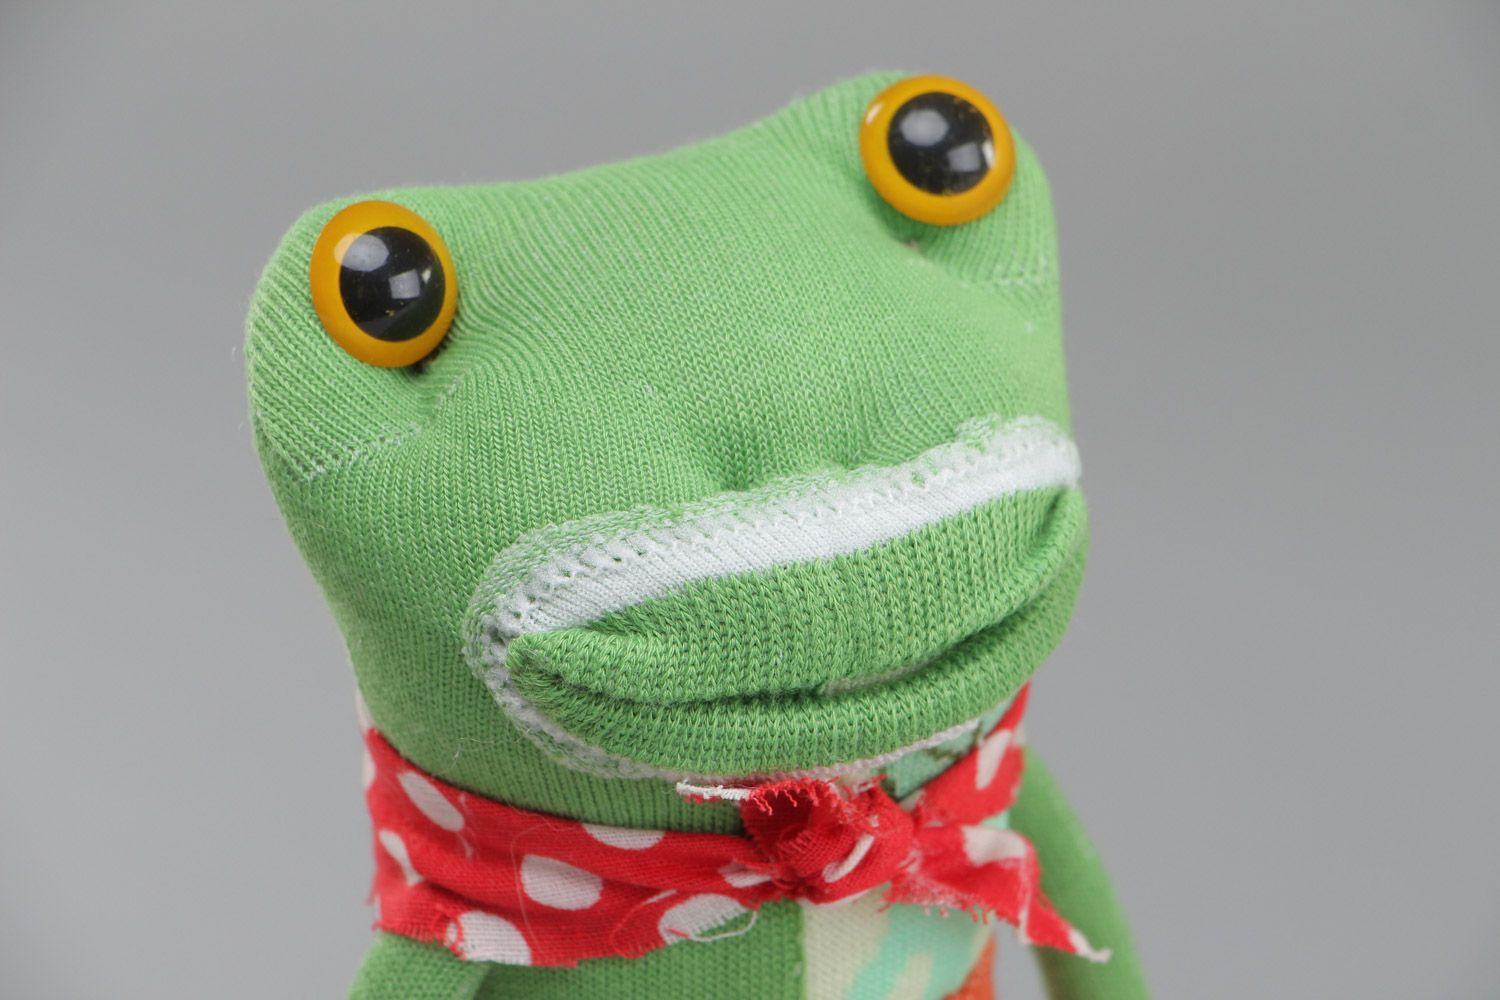 Joli jouet mou fait main en chaussettes grenouille verte cadeau pour enfant photo 2